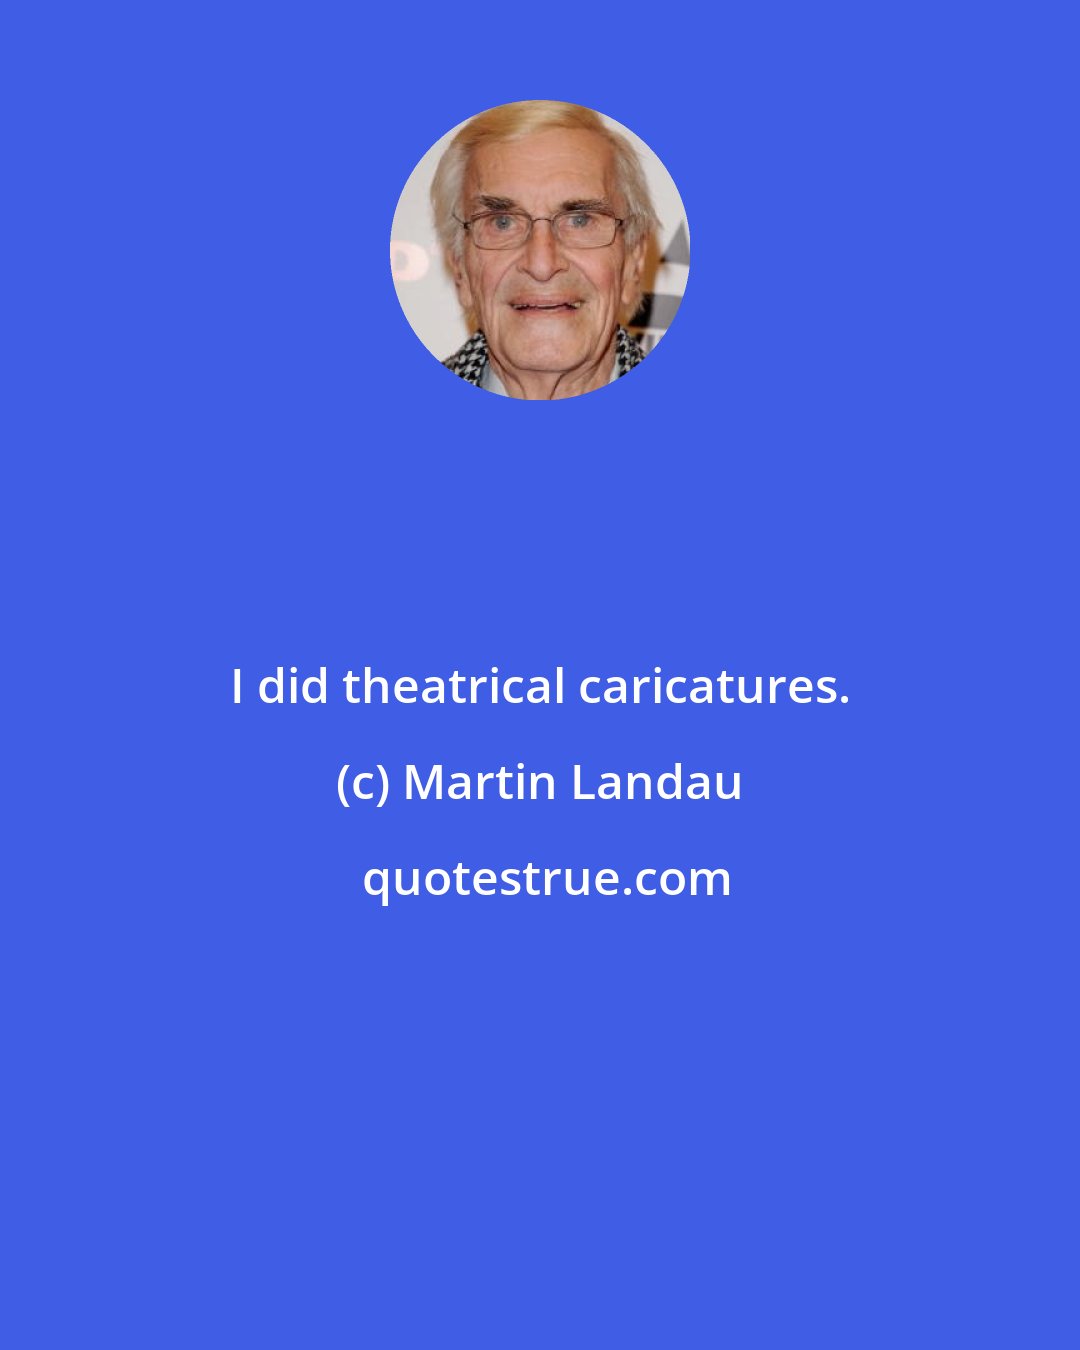 Martin Landau: I did theatrical caricatures.